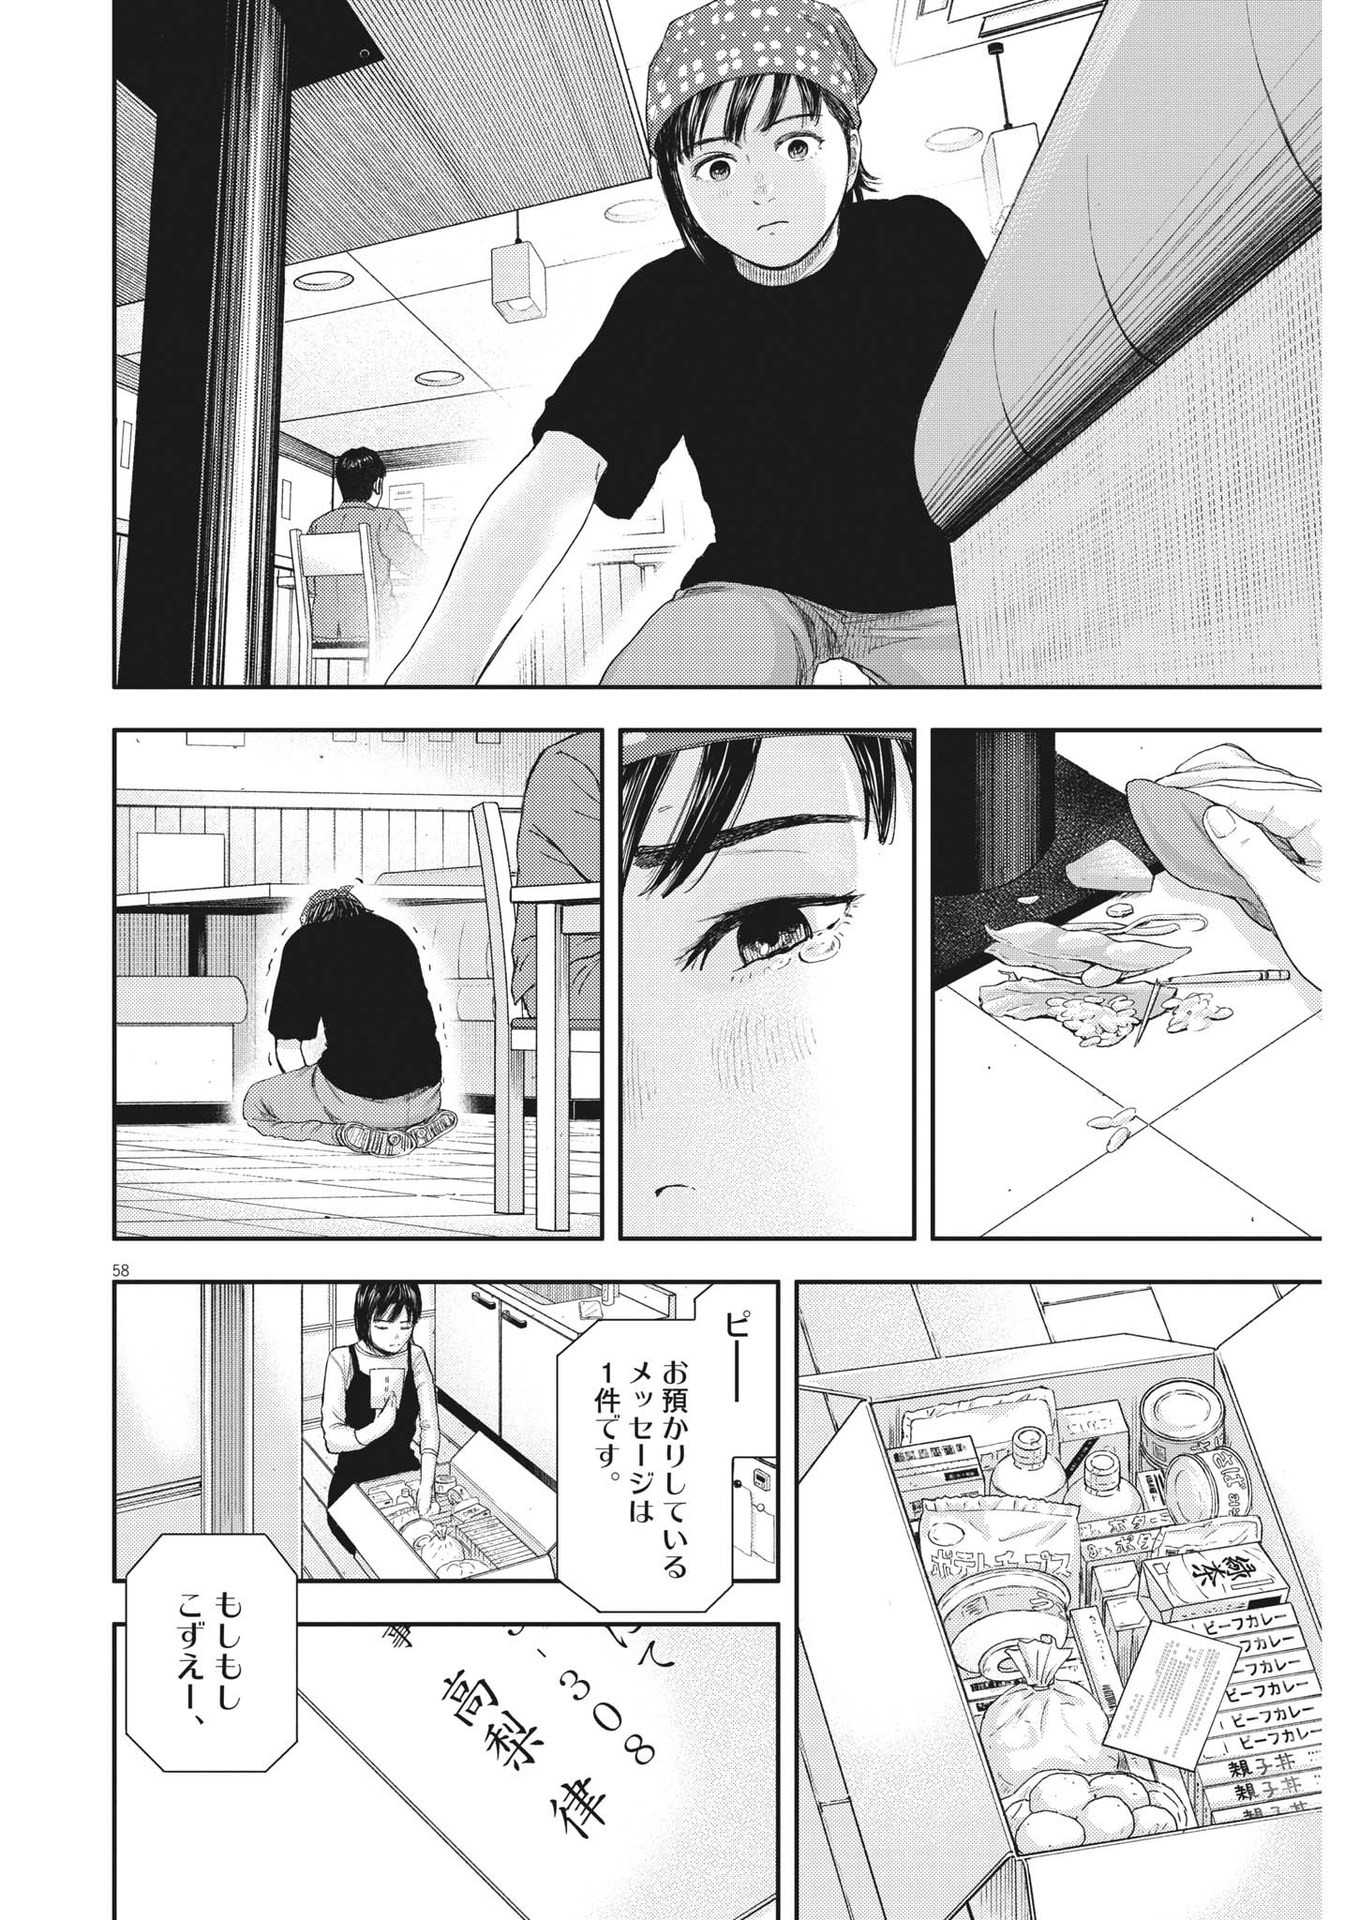 Yumenashi-sensei no Shinroshidou - Chapter 1 - Page 58